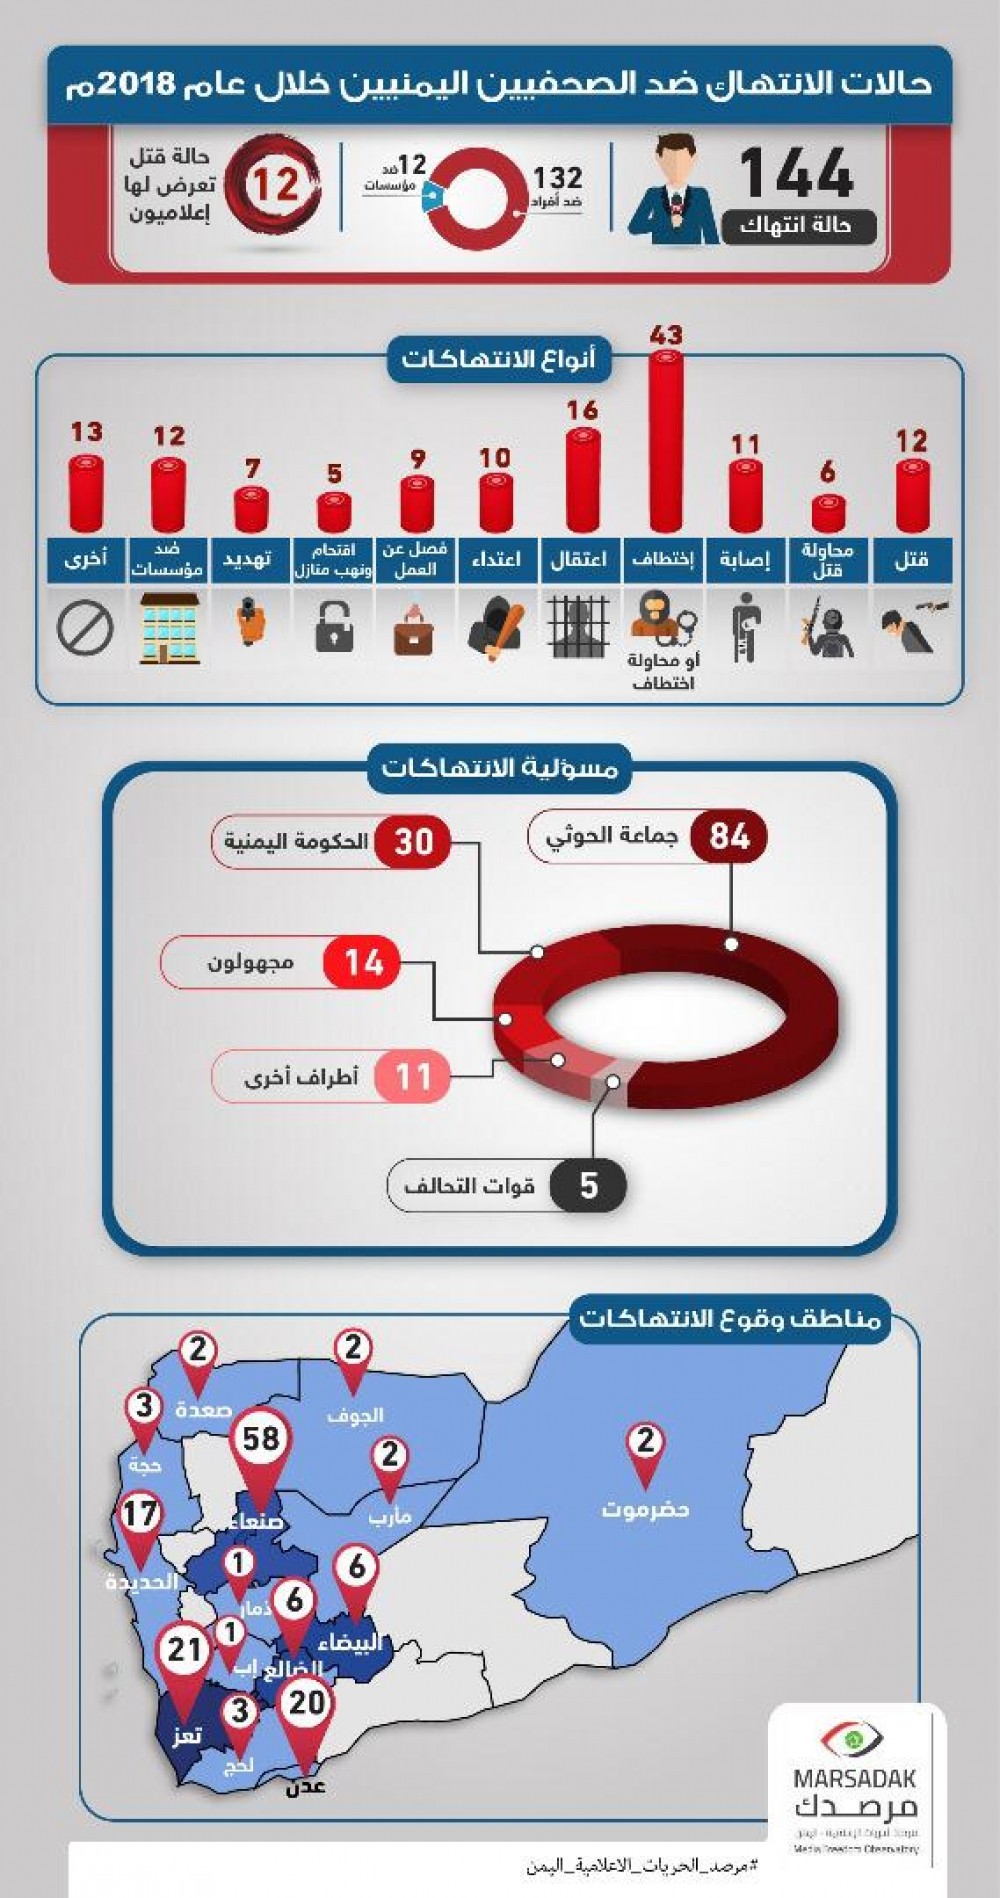 تقرير حقوقي يرصد 144 انتهاكاً ضد الحريات الاعلامية خلال العام الماضي منها 12 حالة قتل 